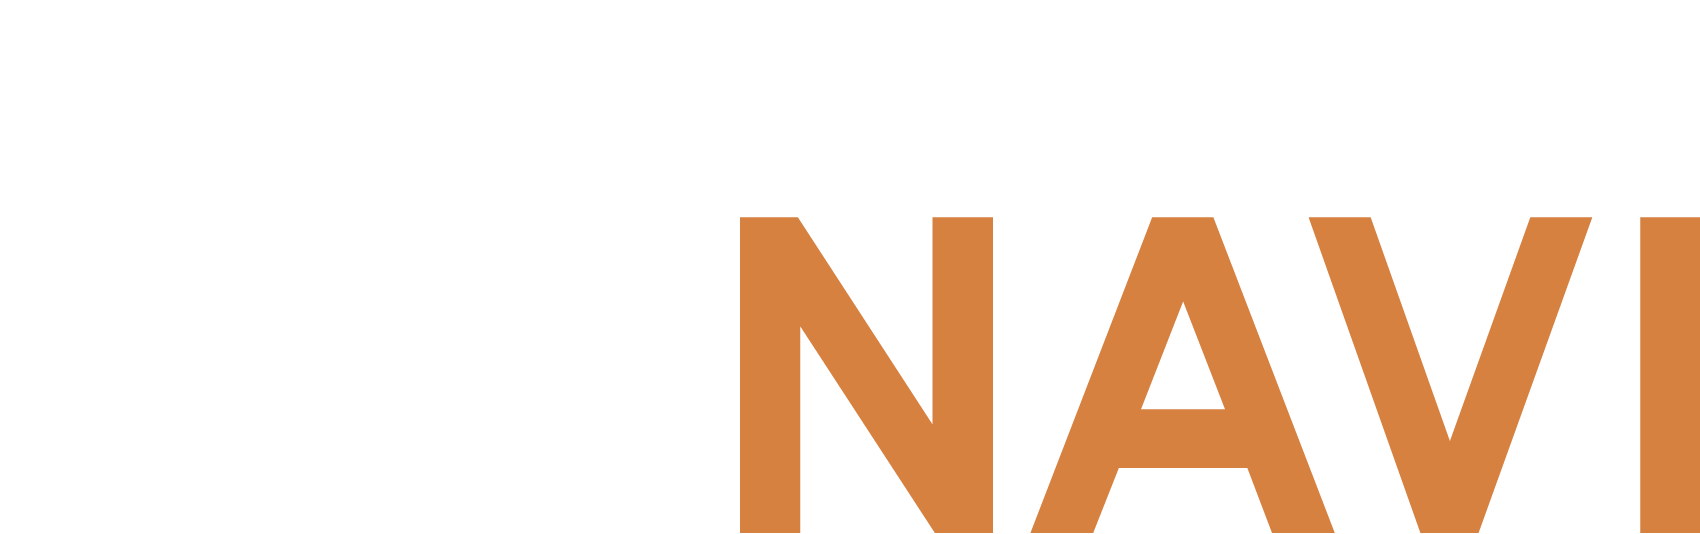 KANDAI MANAVI